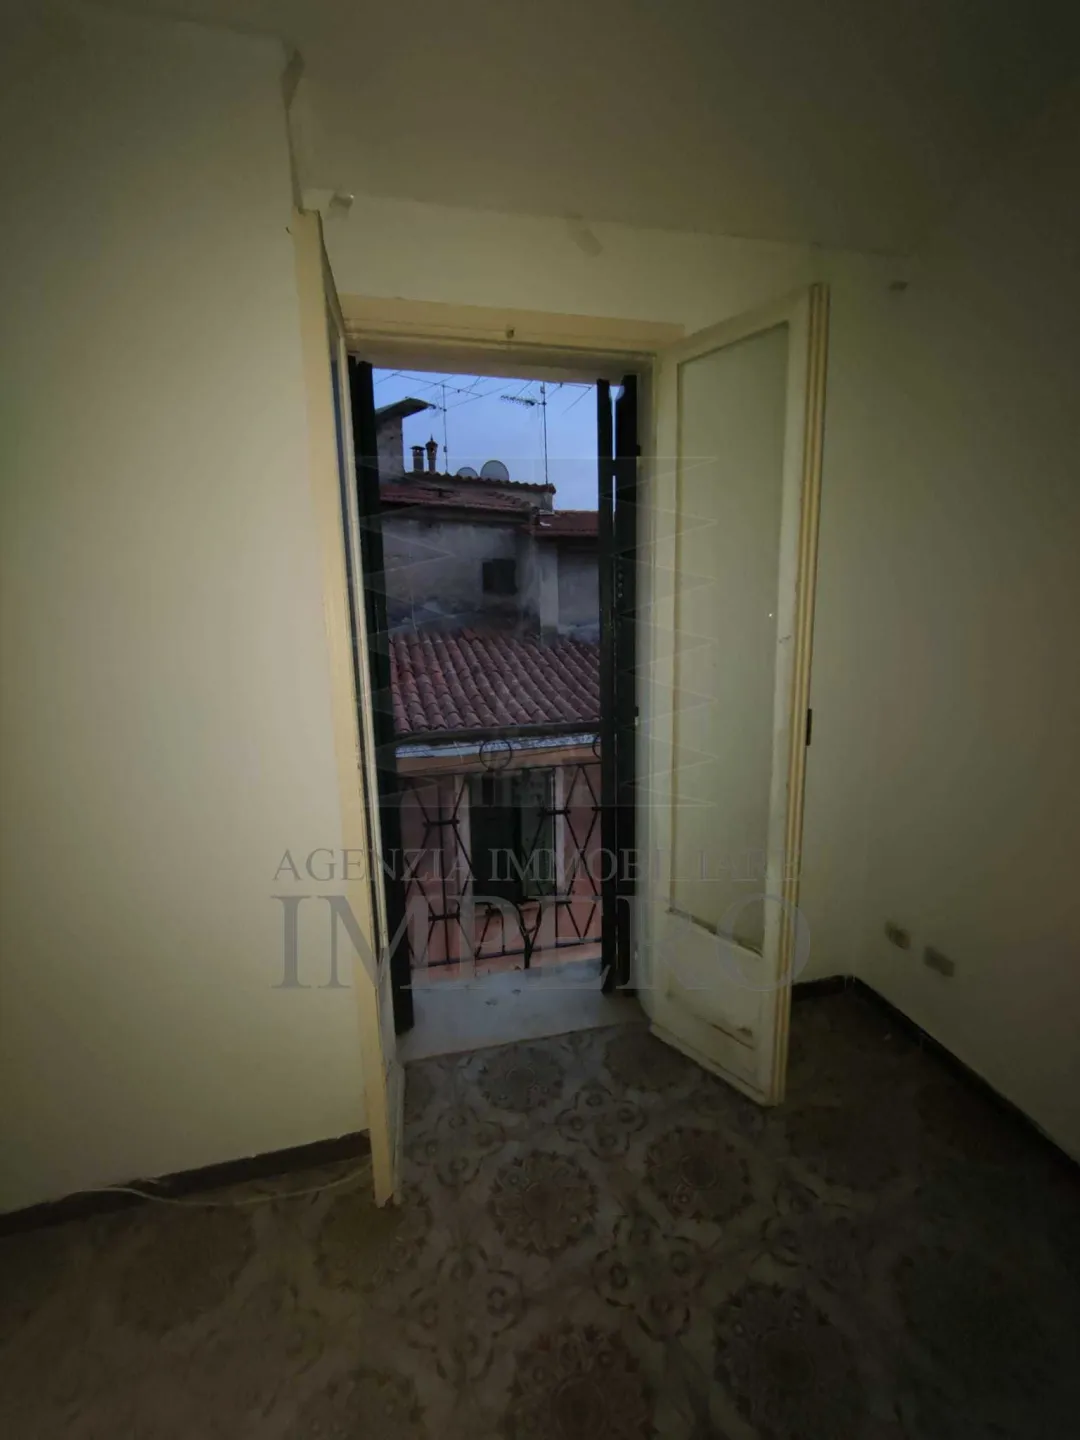 Immagine per Appartamento in vendita a Bordighera via Carlo Botta